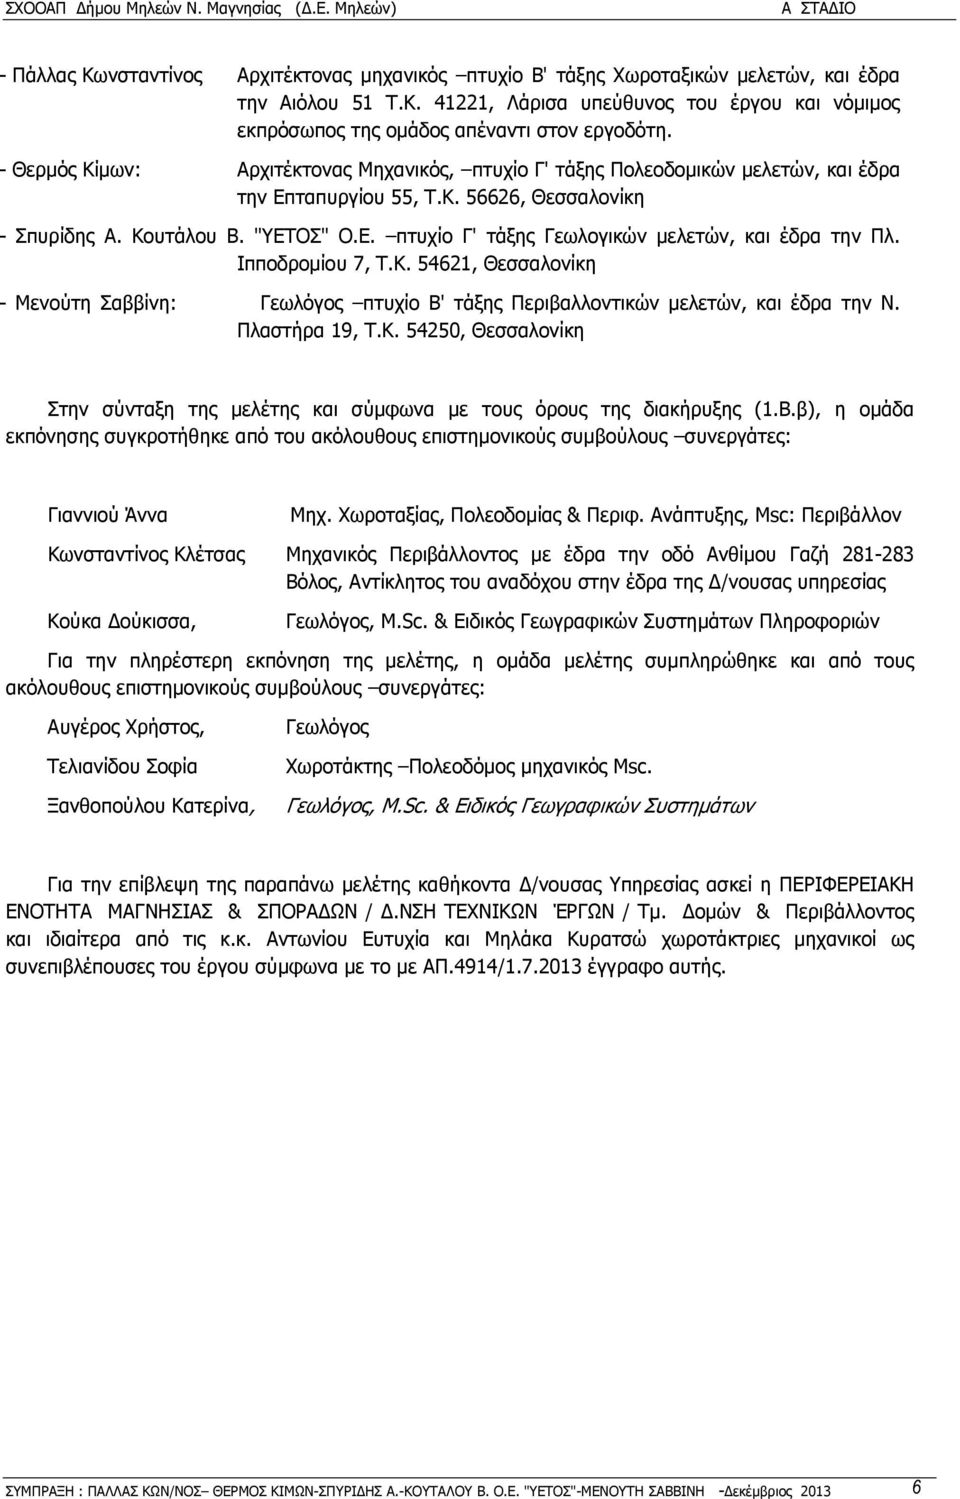 Ιπποδροµίου 7, Τ.Κ. 54621, Θεσσαλονίκη - Μενούτη Σαββίνη: Γεωλόγος πτυχίο Β' τάξης Περιβαλλοντικών µελετών, και έδρα την Ν. Πλαστήρα 19, Τ.Κ. 54250, Θεσσαλονίκη Στην σύνταξη της µελέτης και σύµφωνα µε τους όρους της διακήρυξης (1.